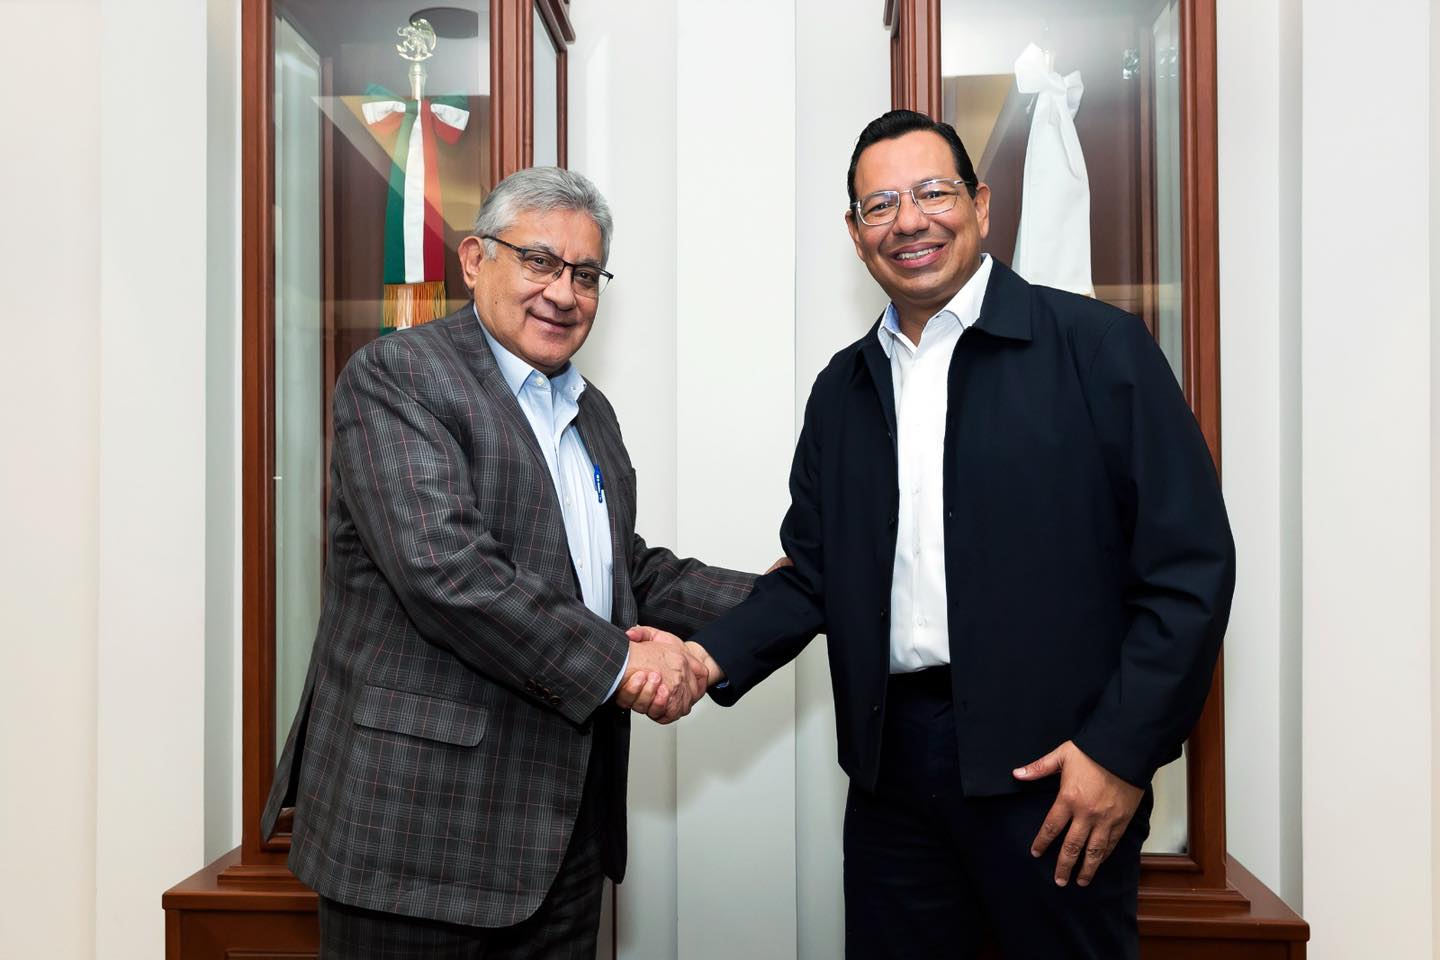 Alfonso Cepeda Salas reafirma compromiso del SNTE en reunión con líderes seccionales para mejorar condiciones de los trabajadores de la educación | Nacional